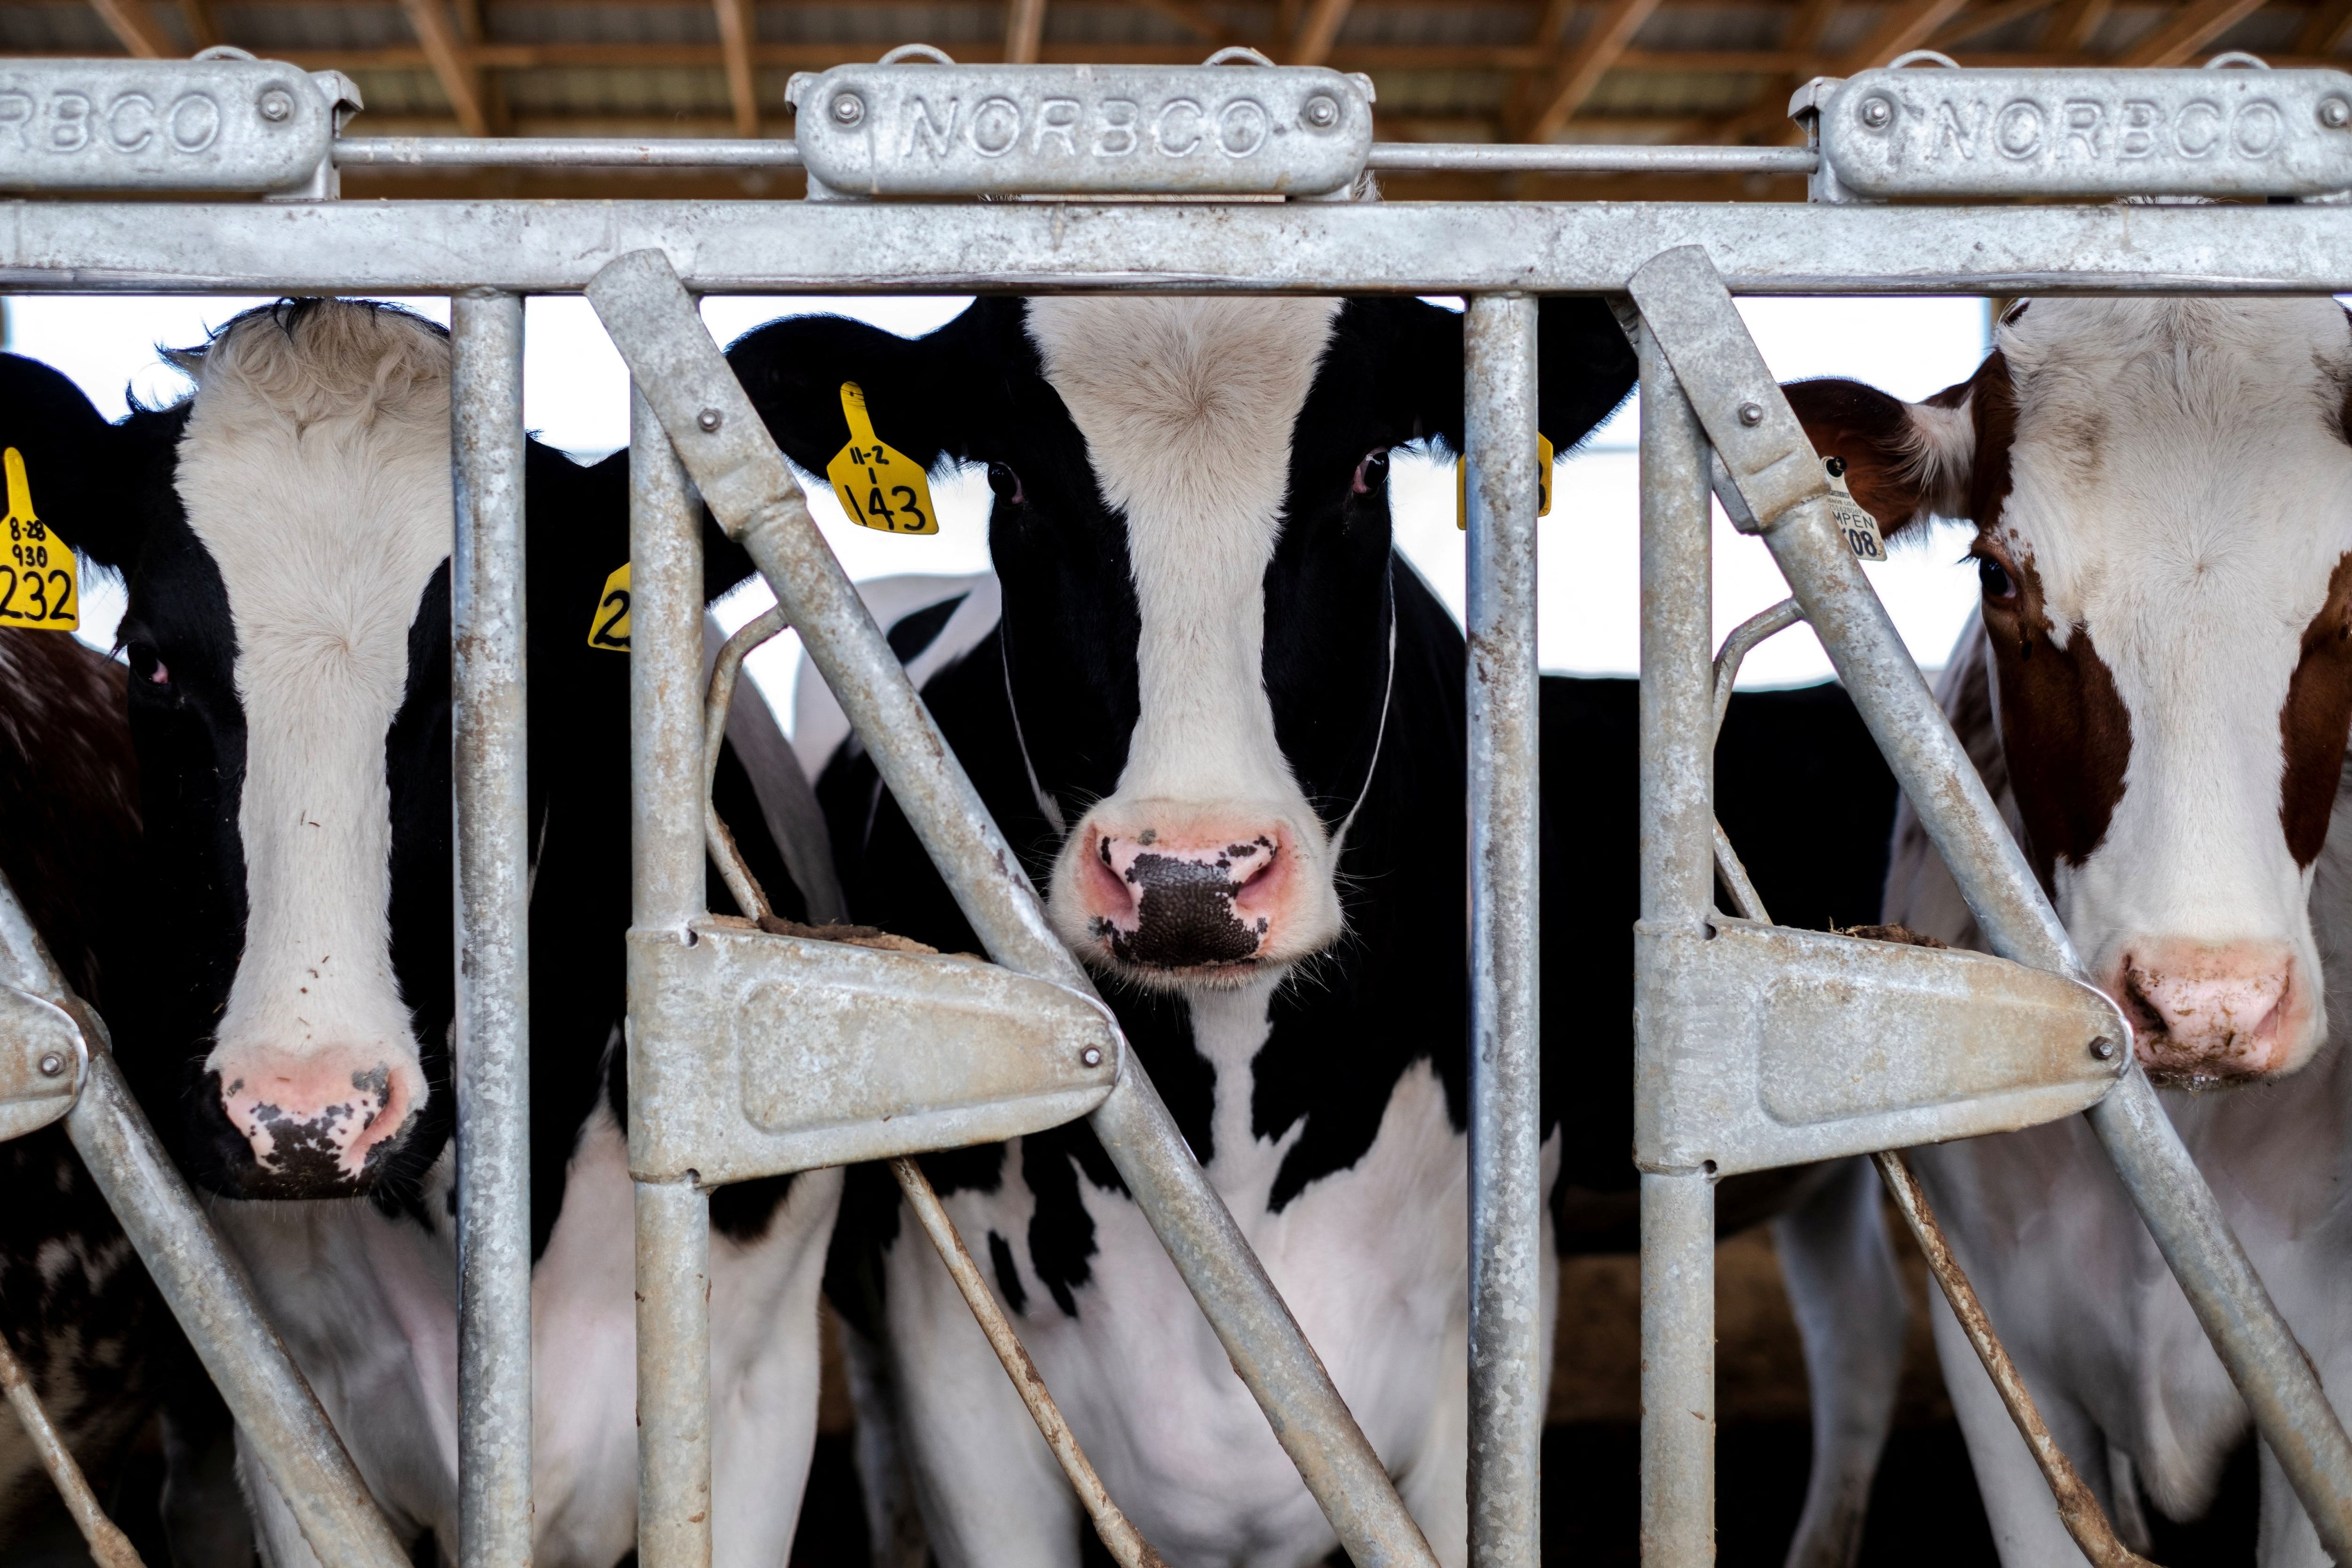 El virus de la gripe aviar se detectó en vacas lecheras de 33 rebaños en los Estados Unidos. También la FDA informó que el 20% de las muestras de leche analizadas del mercado minorista contenían “fragmentos virales”/   REUTERS/Jim Vondruska